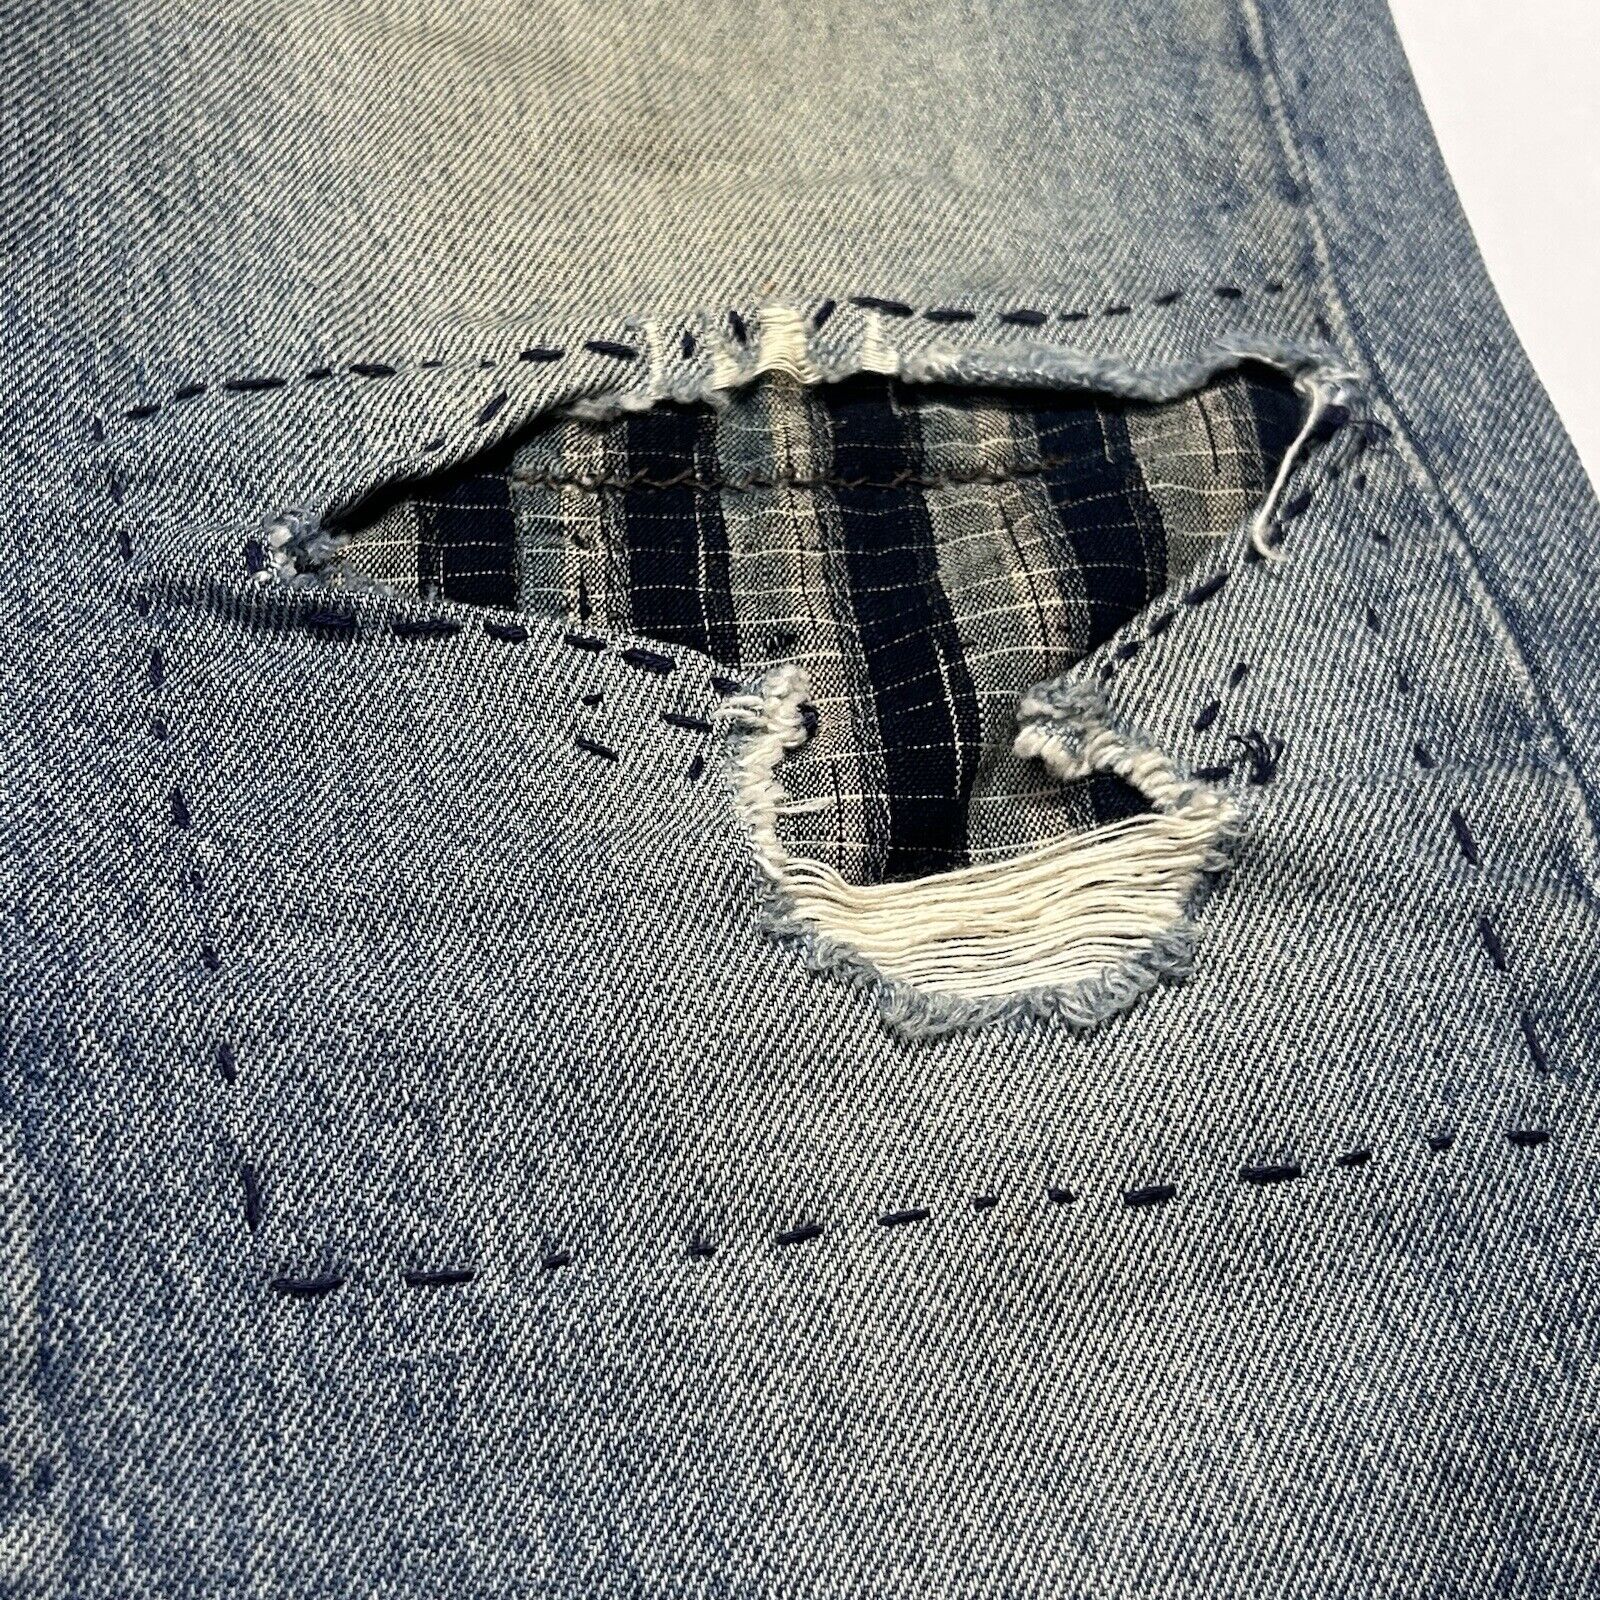 Japanese Shashiko Stitched Boro Cloth Distressed … - image 7